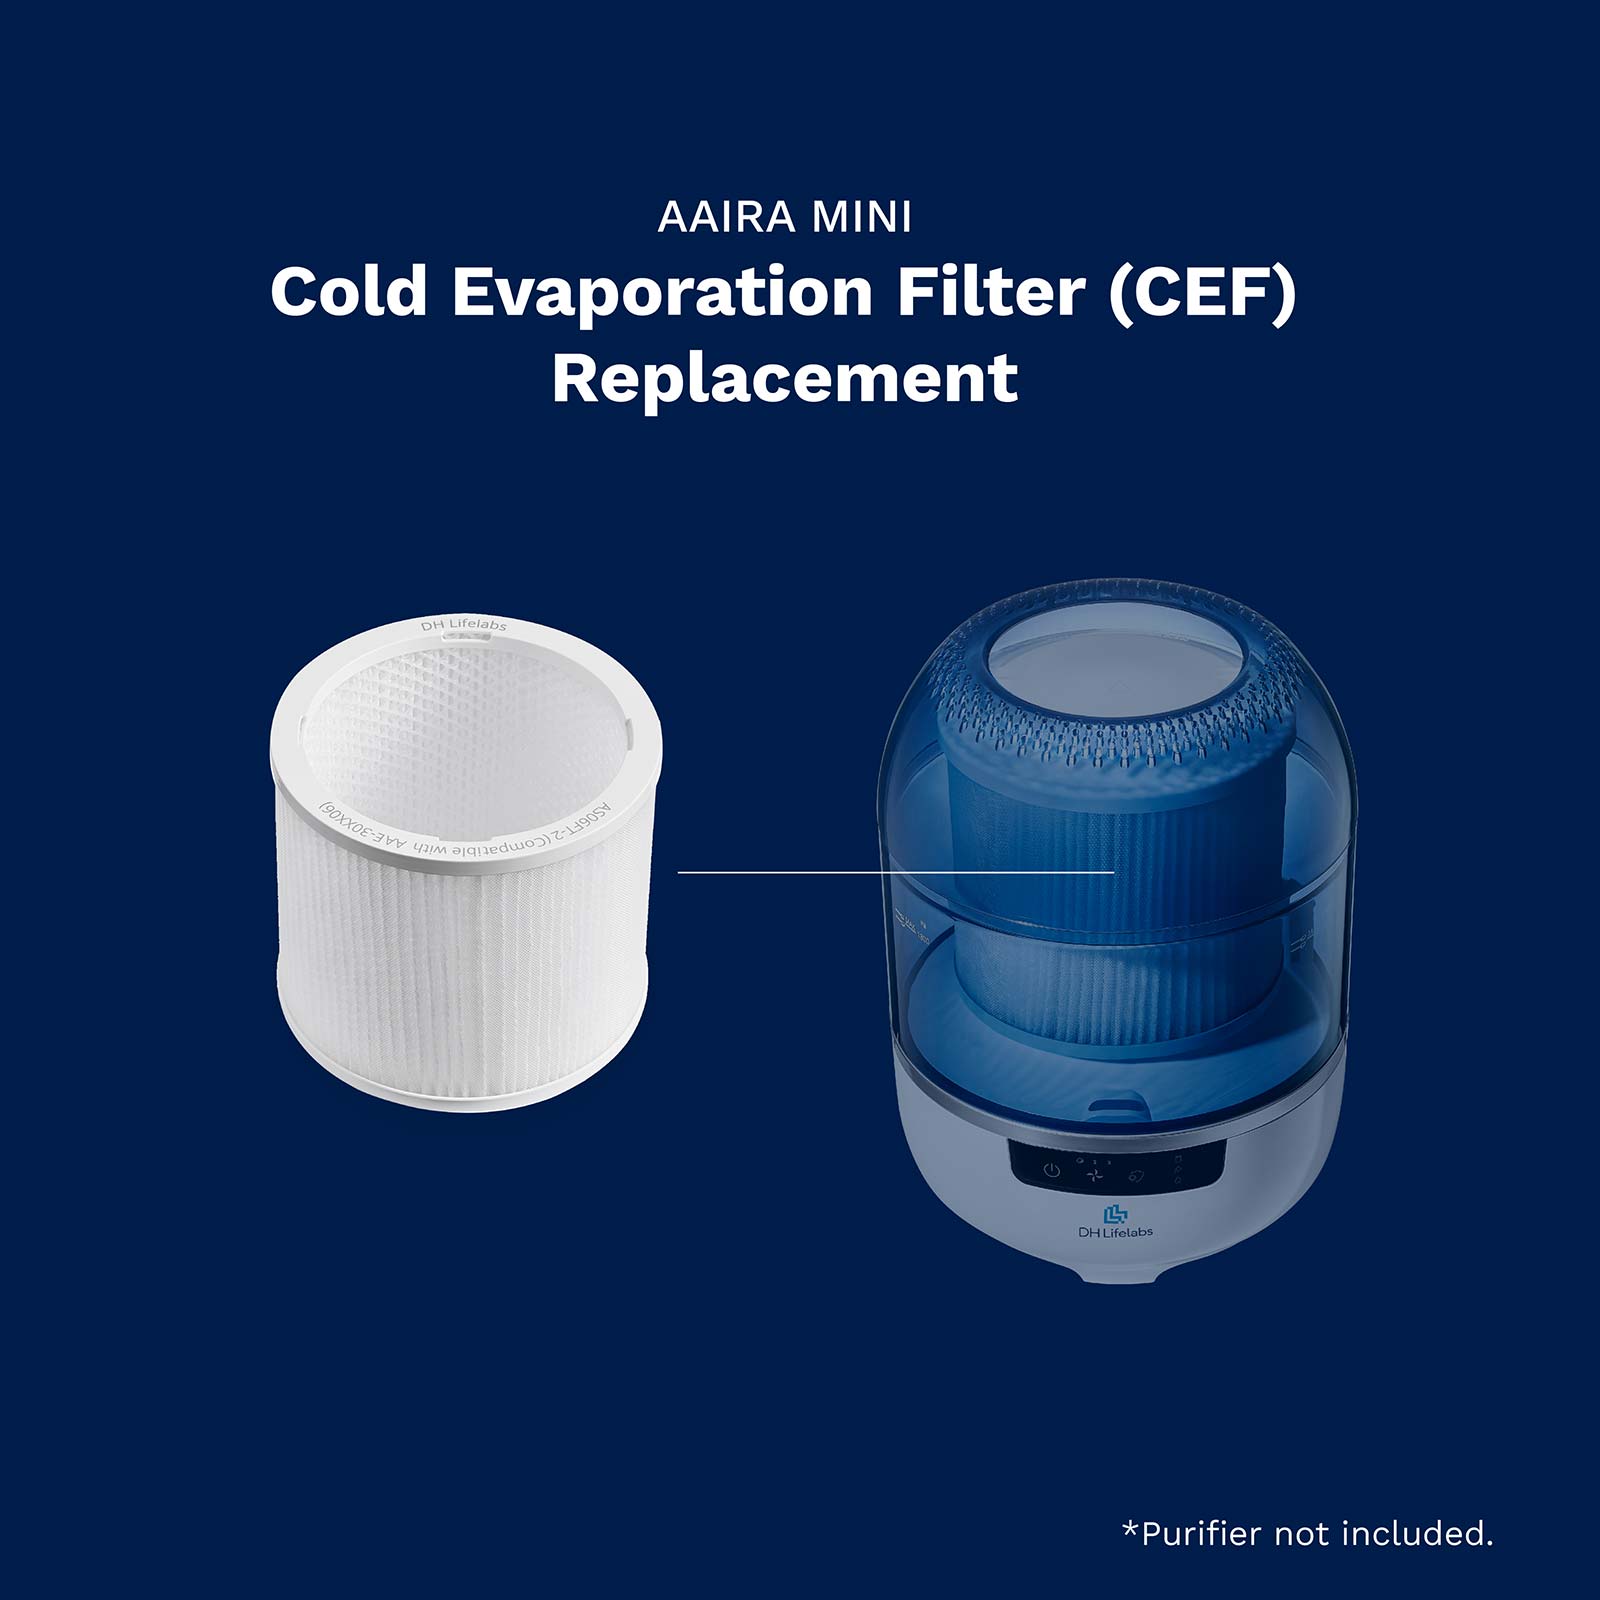 Aaira Mini / Cold Evaporation Filter (CEF)